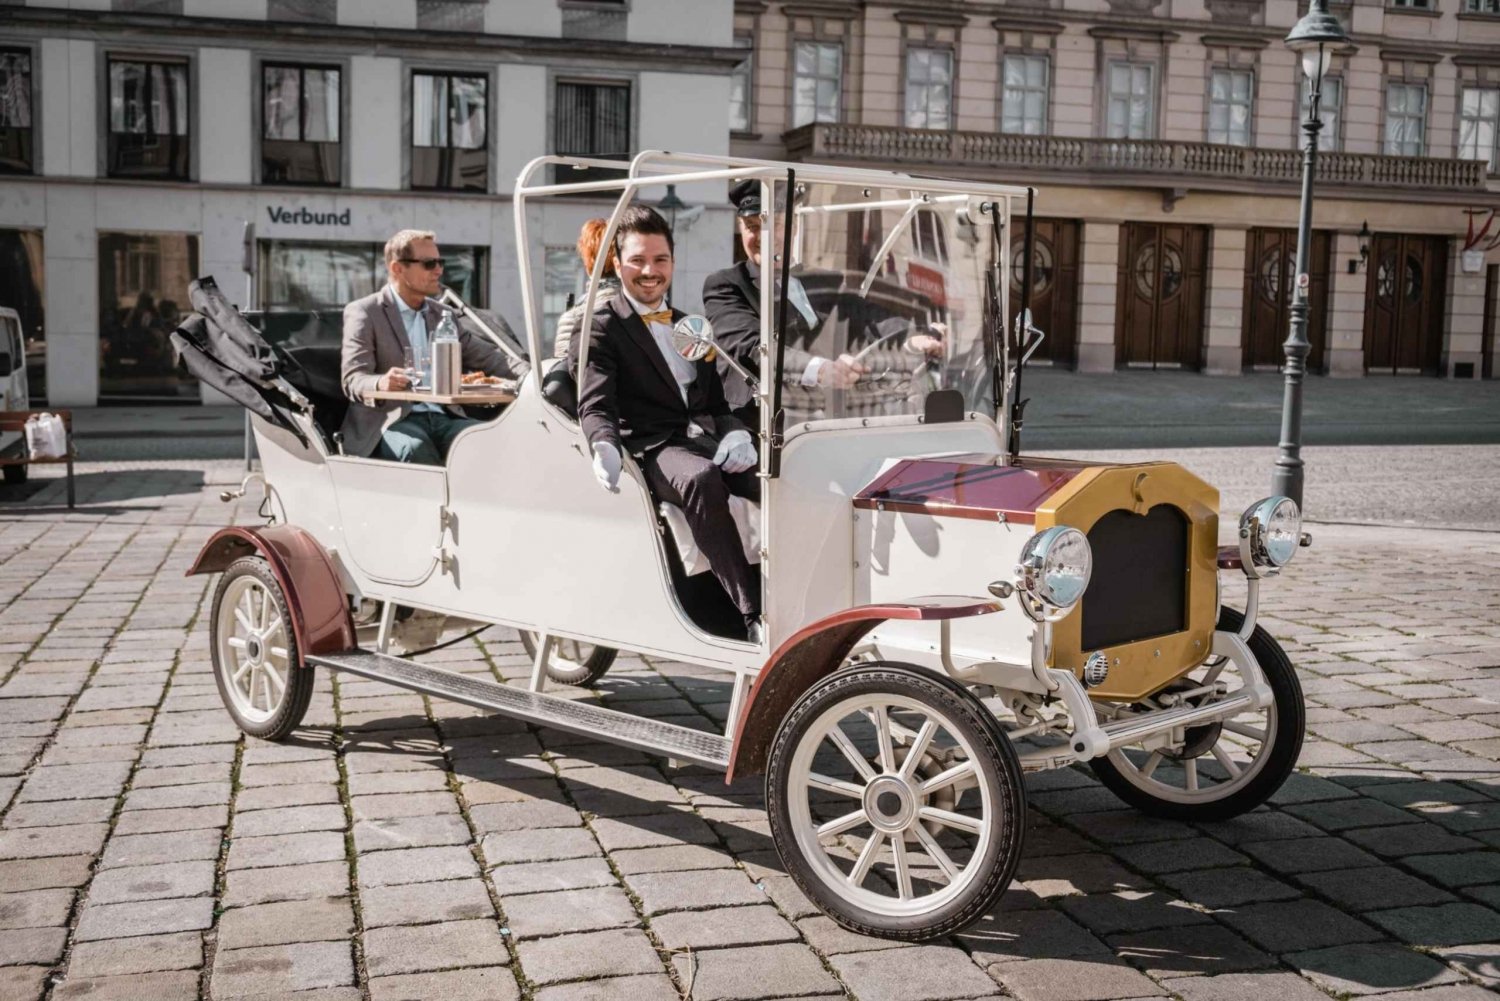 Viena: passeio gastronômico em um carro elétrico antigo